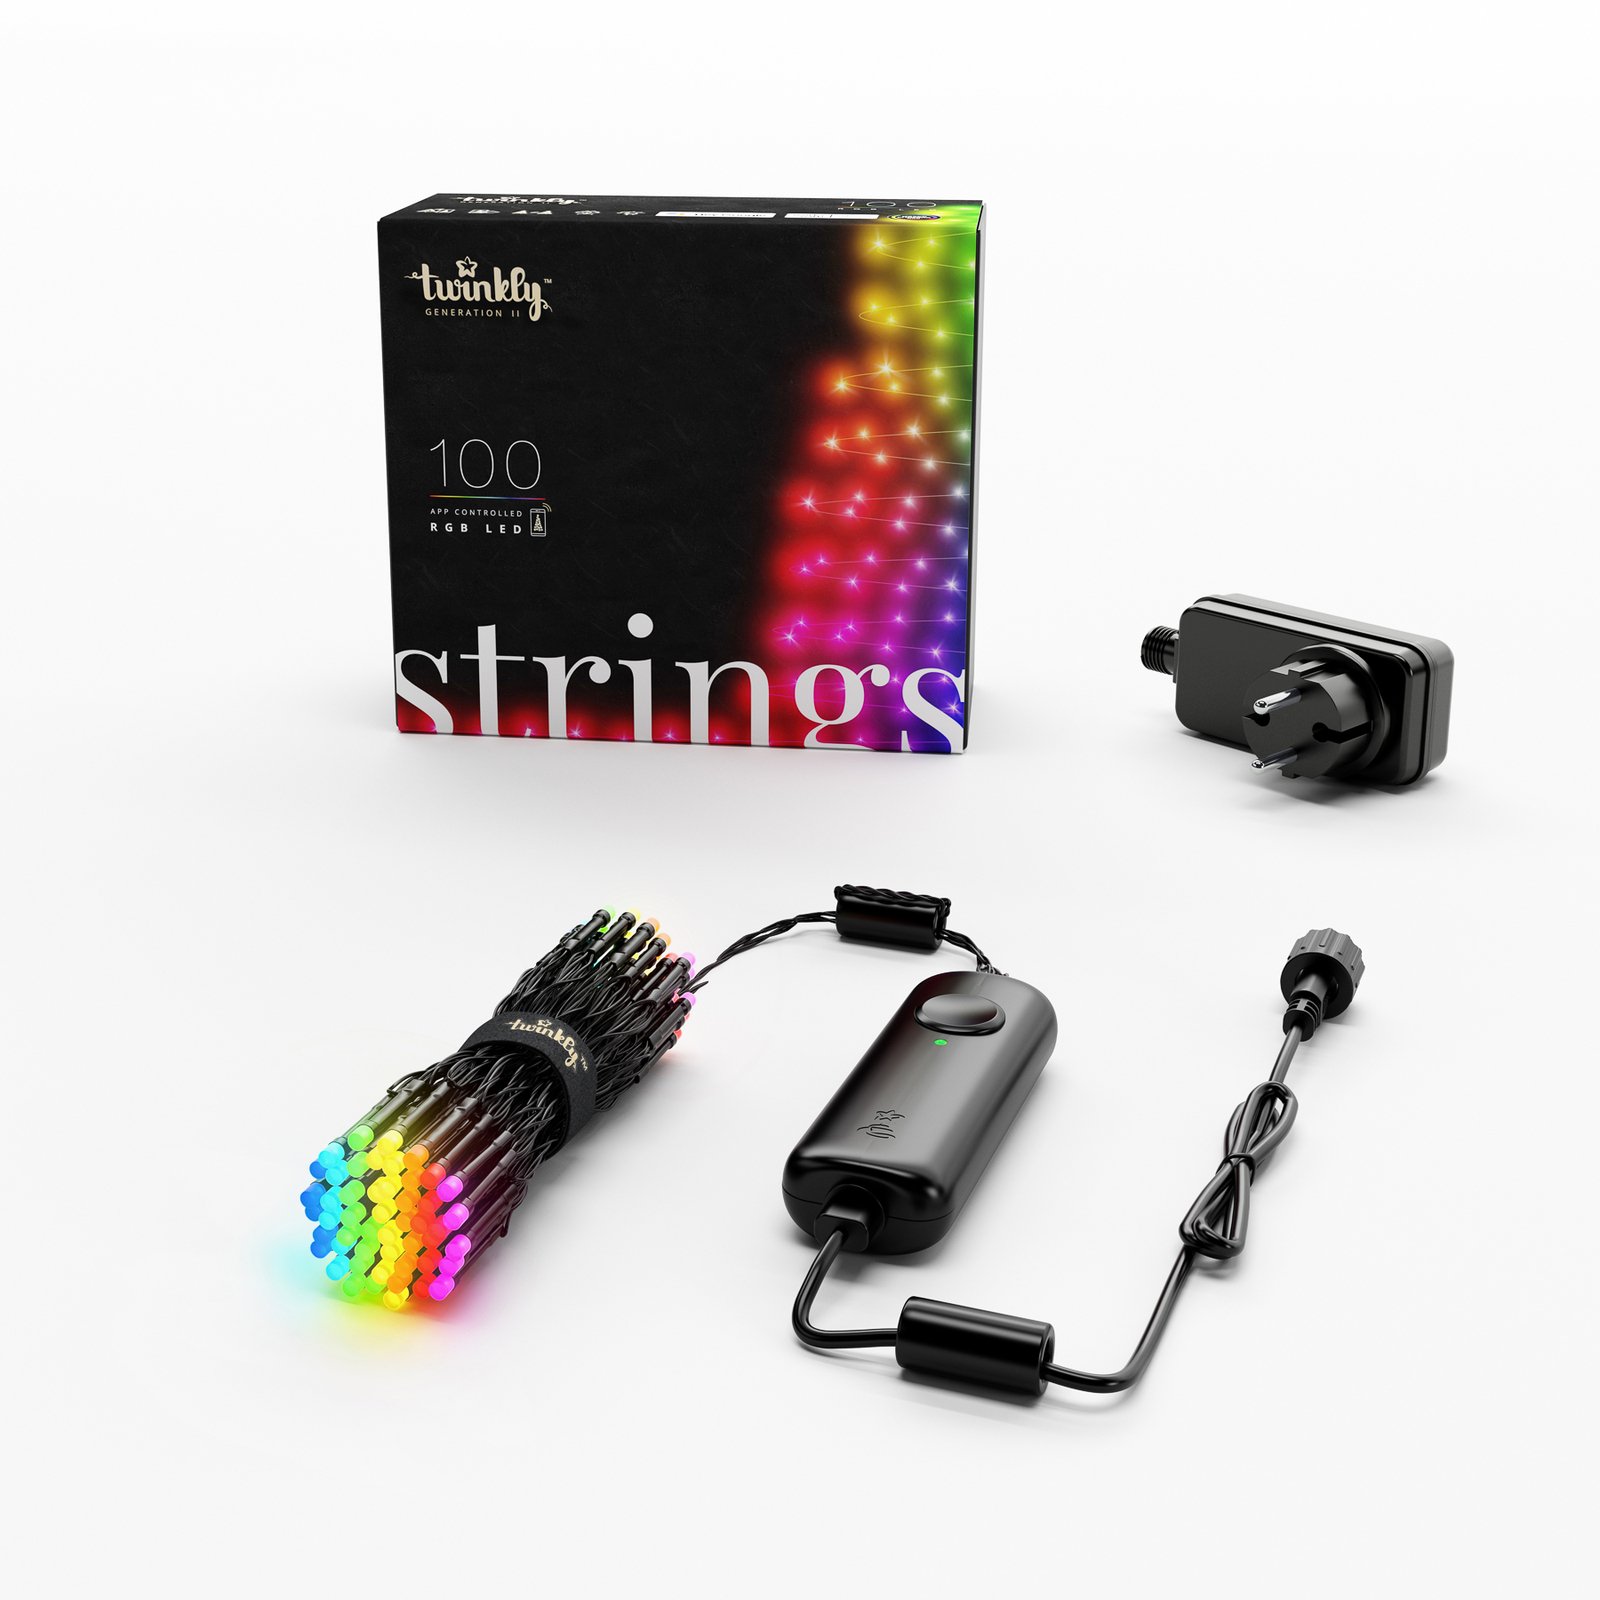 Lichterkette Twinkly RGB, schwarz, 100-flammig 8m